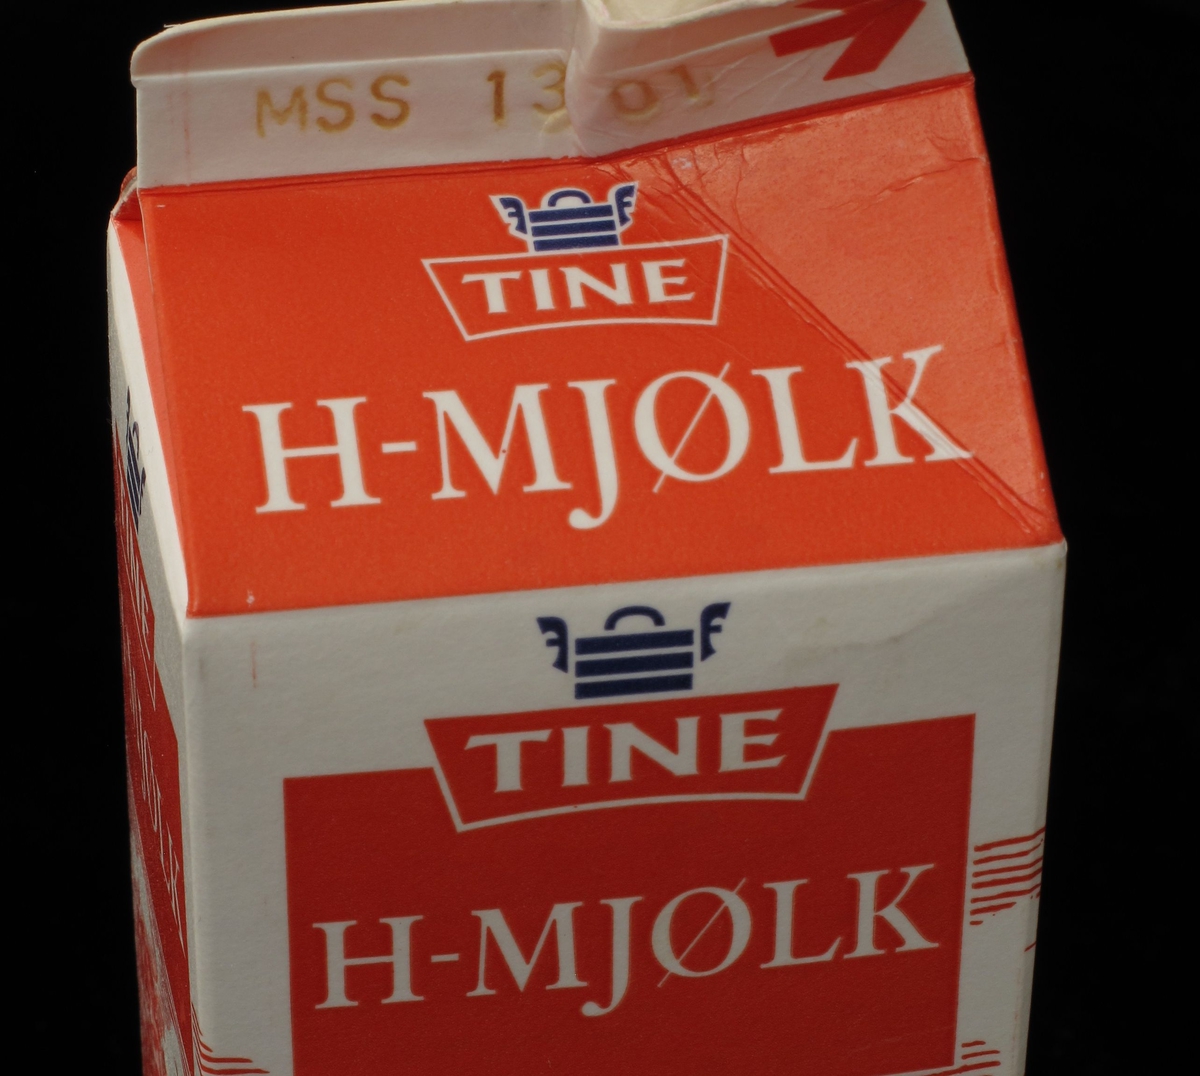 Kartong til melk, mønetype, volum 1 liter. Produsert for Tine. Design kartong 1995 med nynorsk tekst. Norsk jordbrukslandskap motiv rundt 3 av kartongens 4 sider. Varedeklarasjonsfelt med produsent, næringsinnhold og strekkode.